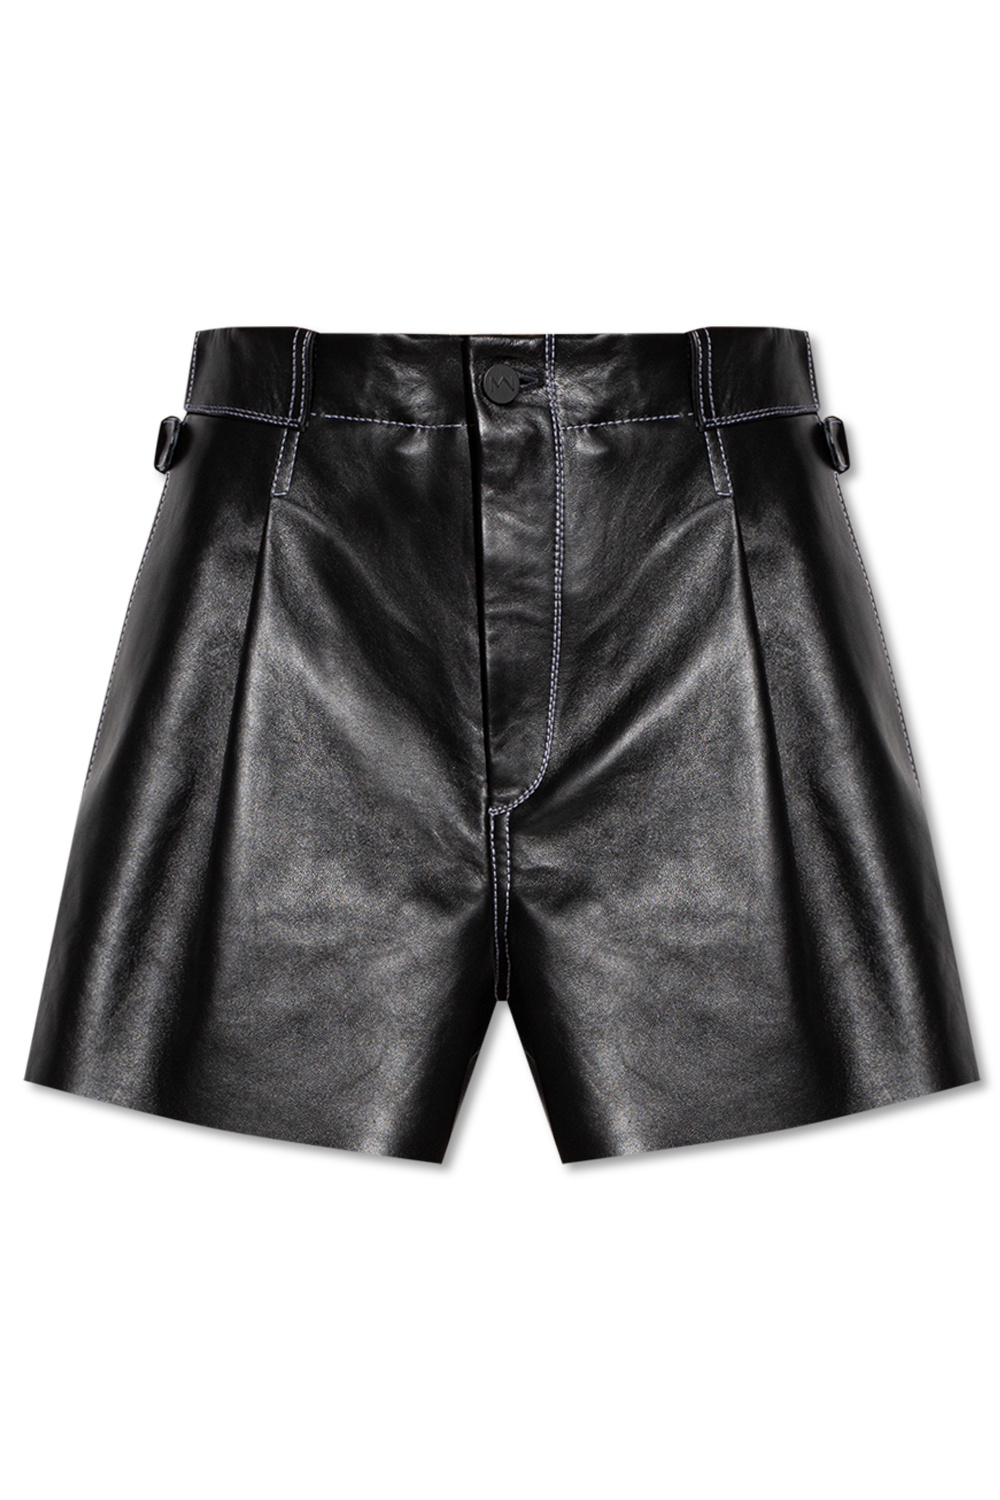 The Mannei ‘Sakib’ leather 3-Stripes shorts